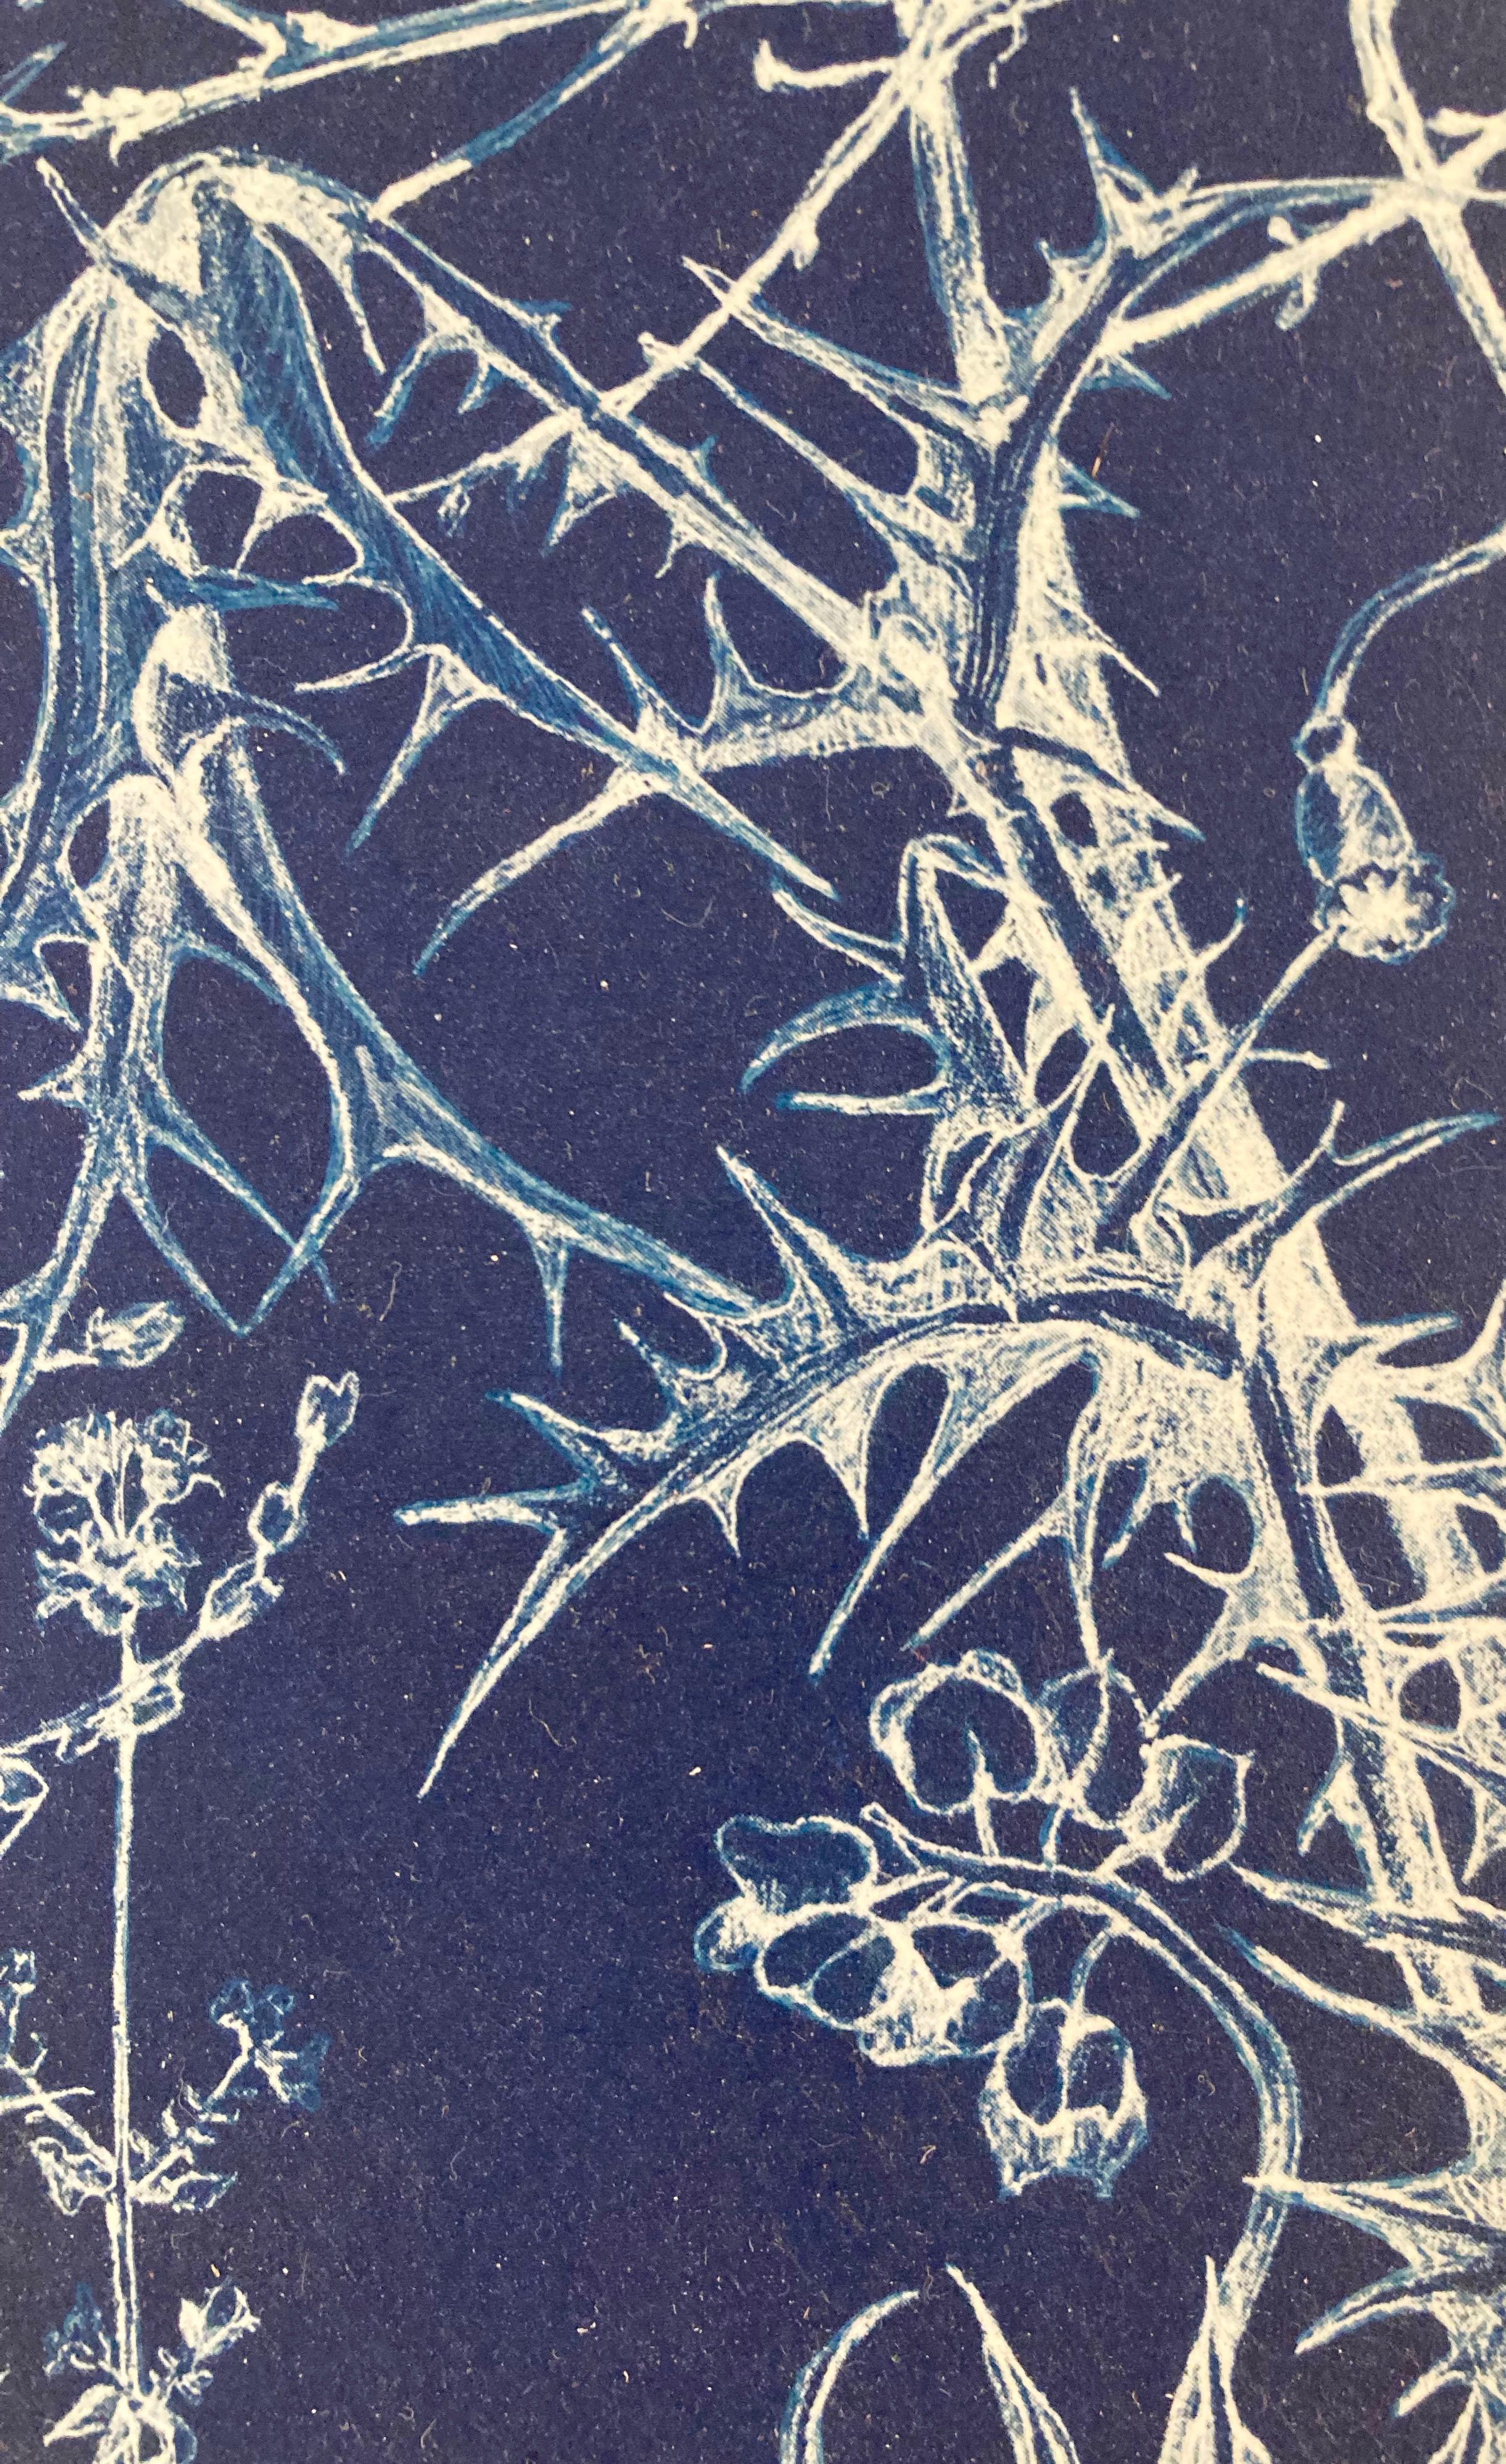 „Mapping the Walk“ Fotograhic Flower Study Realistische und abstrakte Blumenstudie in Blau/Weiß (Realismus), Photograph, von Judith Allen-Efstathiou